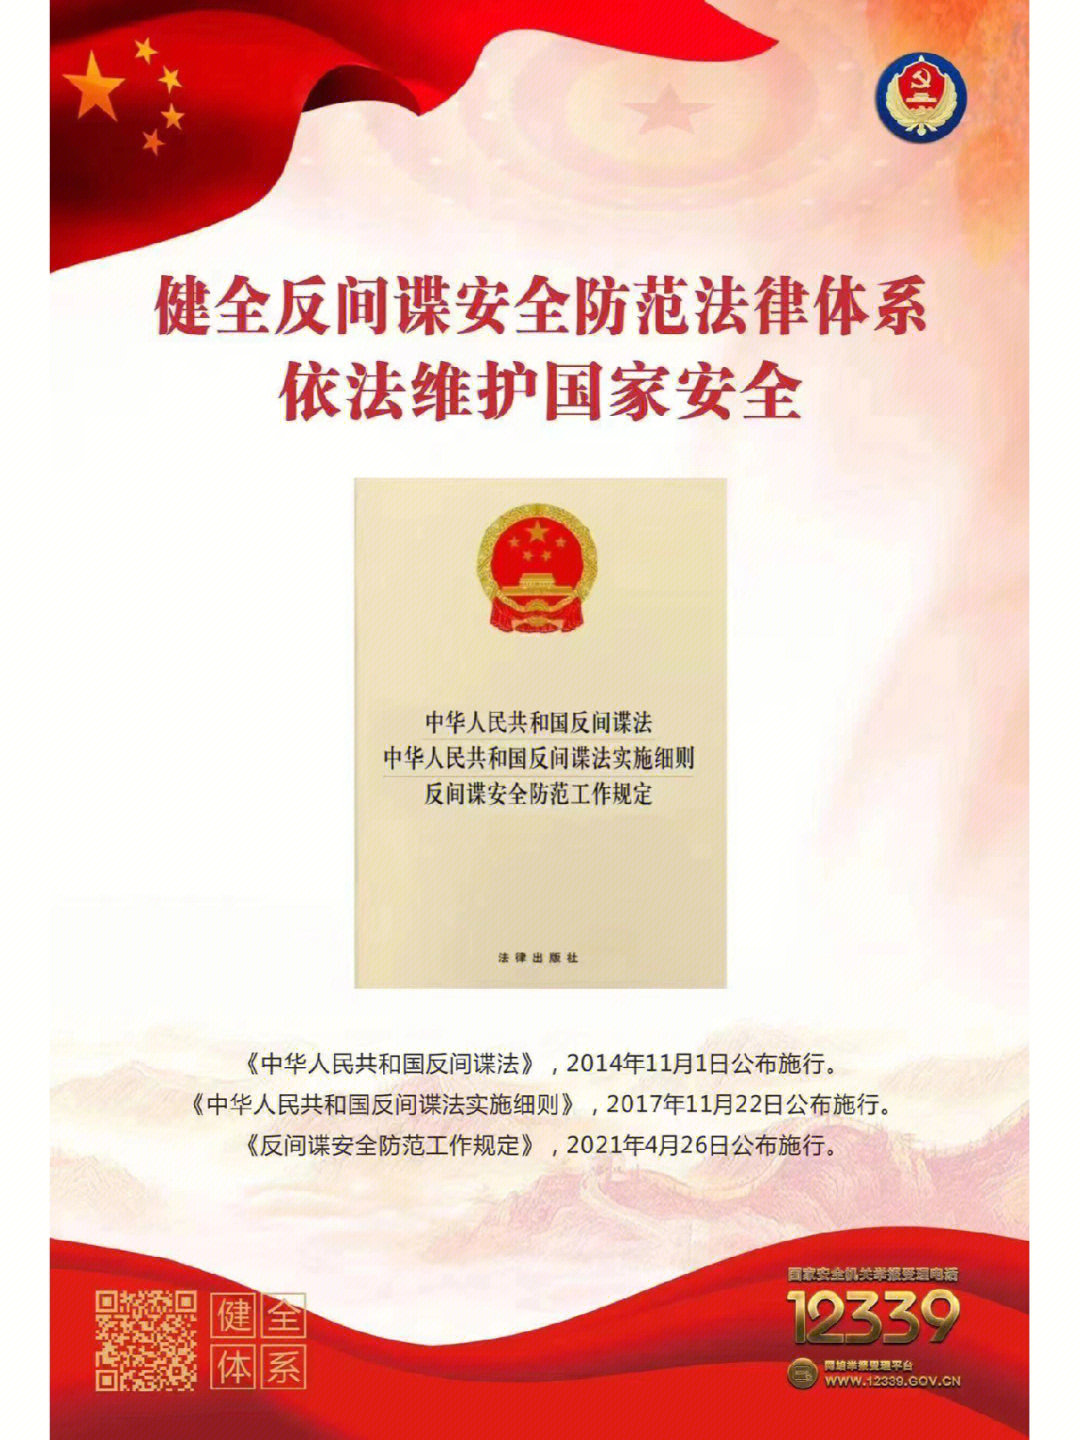 2022年11月1日,是《中华人民共和国反间谍法》颁布实施八周年,请大家